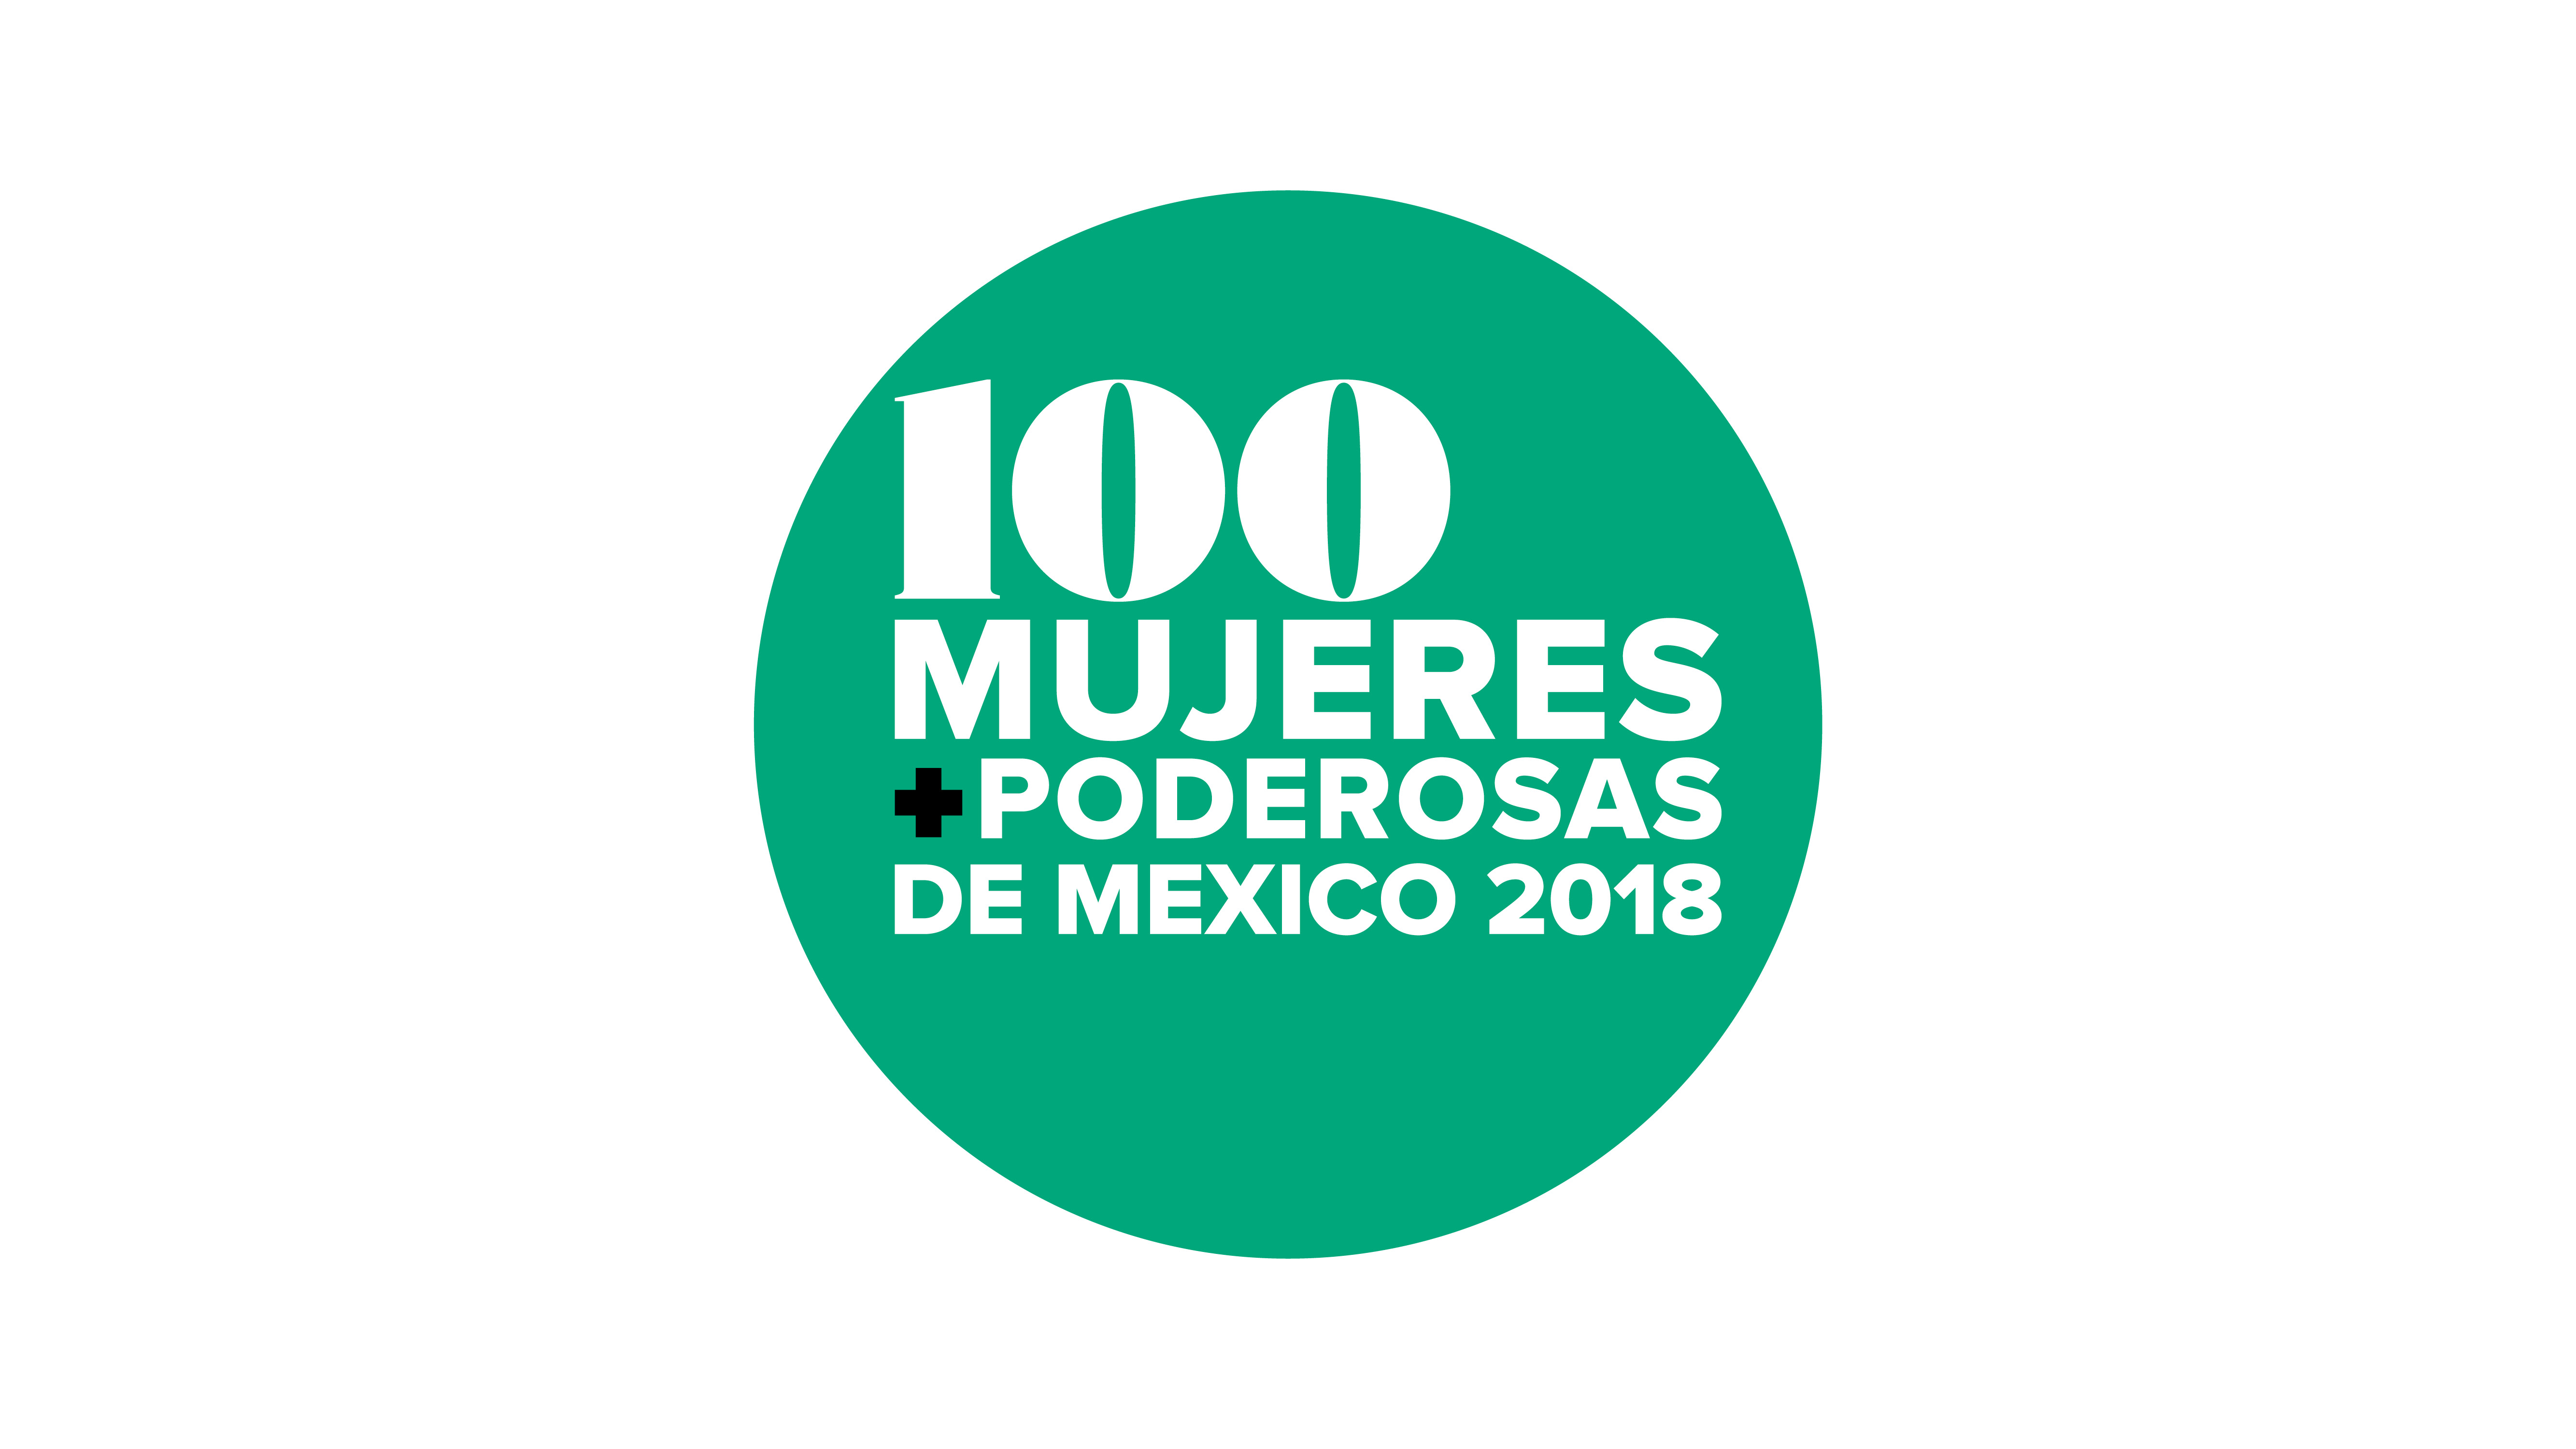 Las 100 Mujeres Más Poderosas en México – I